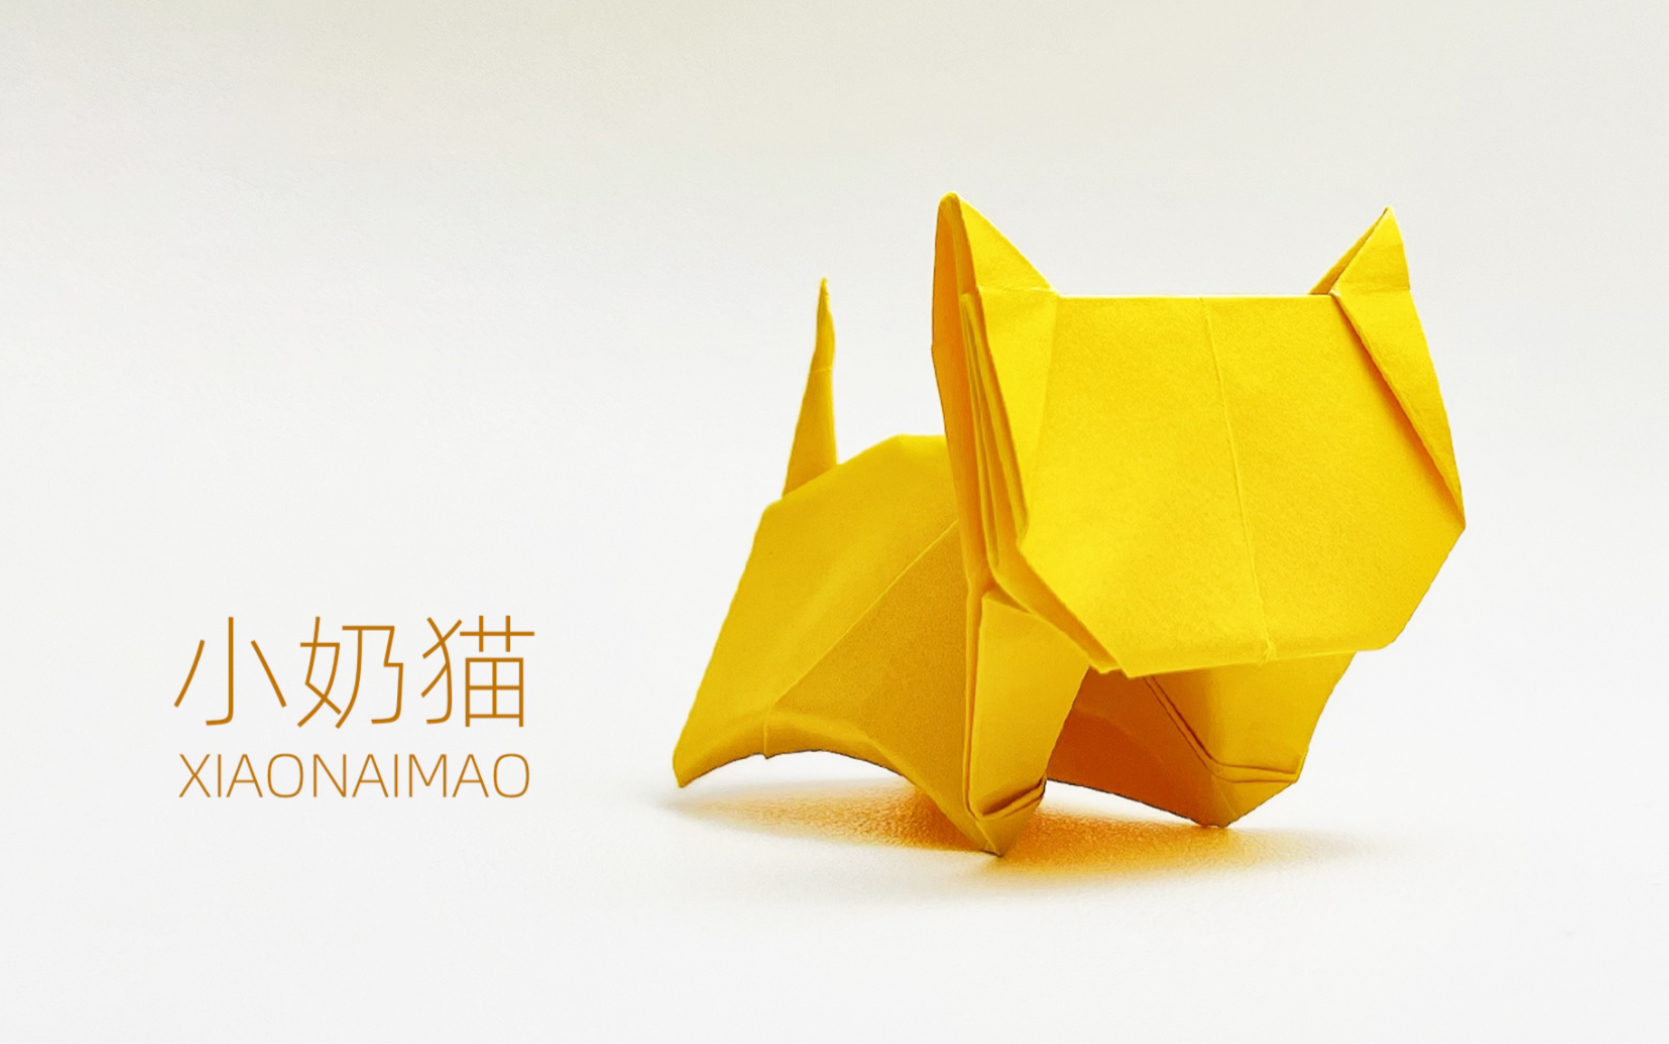 『动物折纸教程』——小奶猫折纸教程